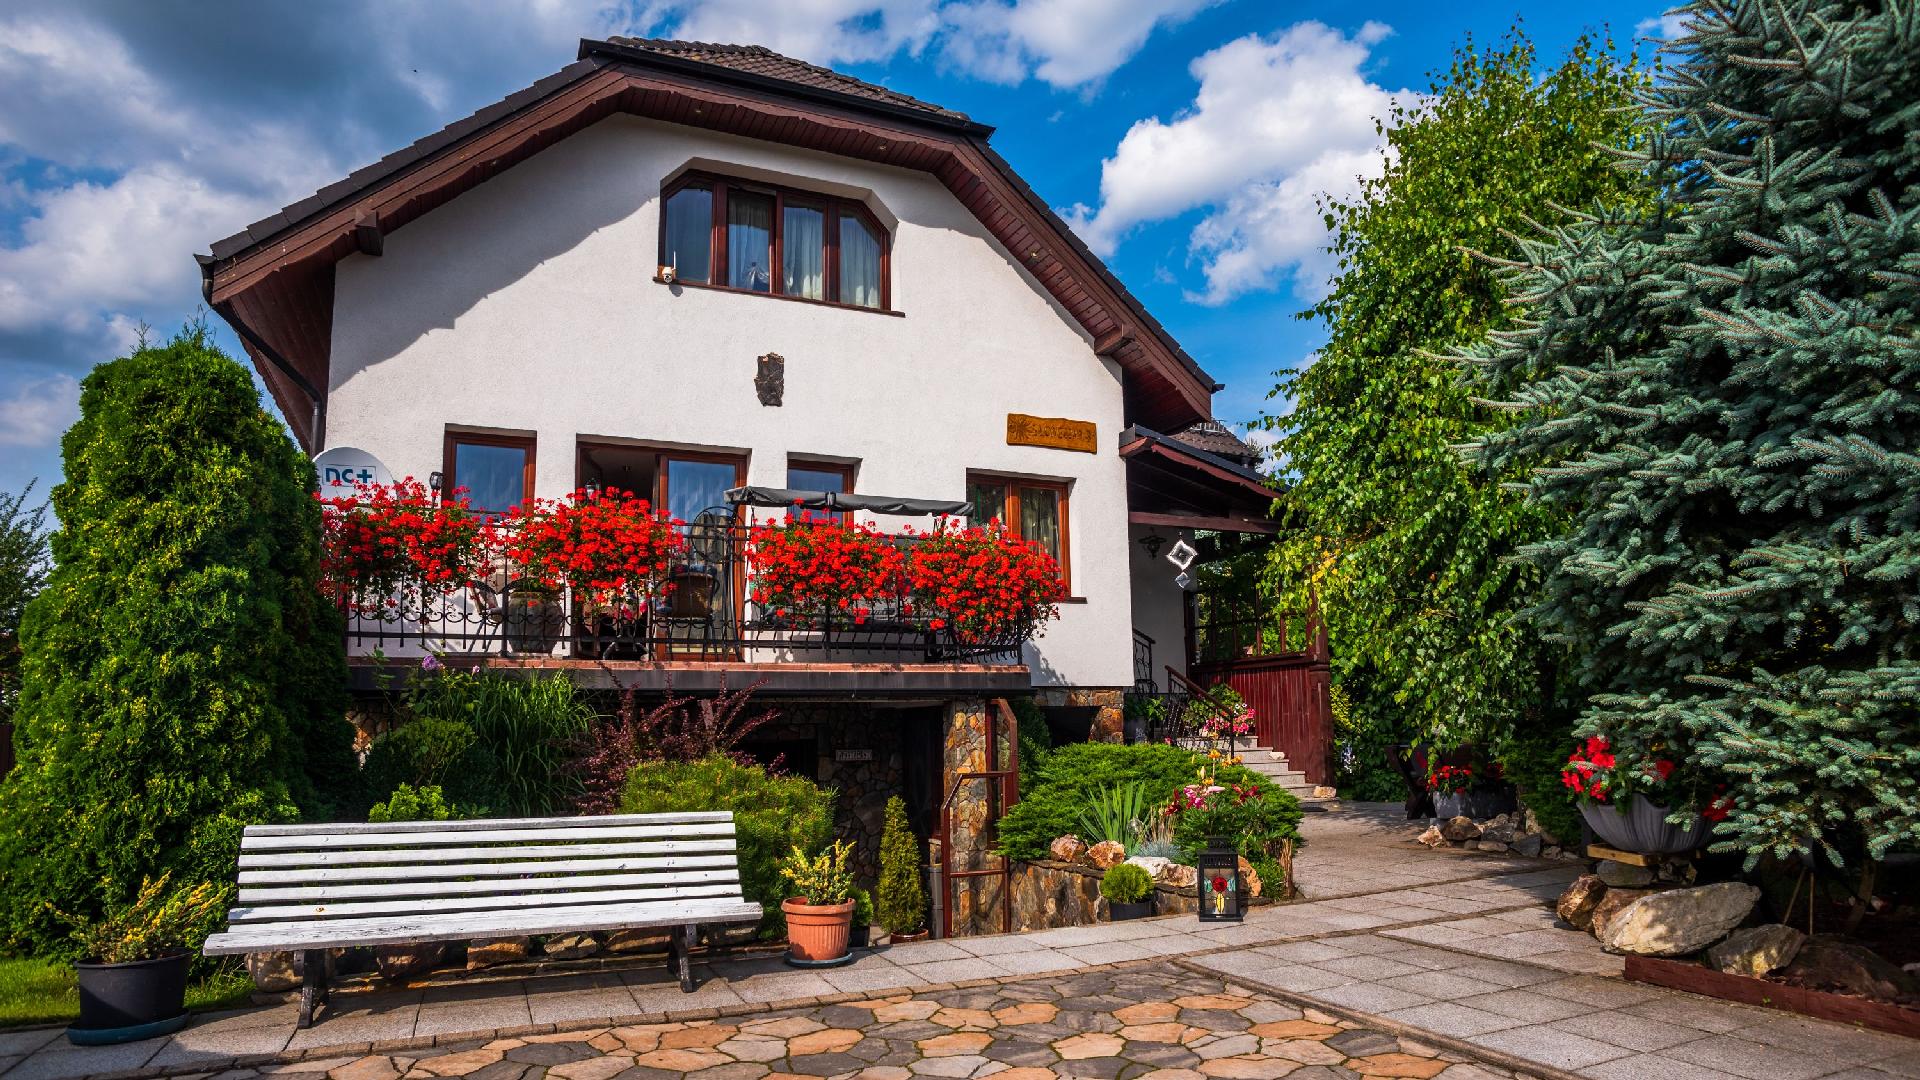 Wohnung in Mys?akowice mit Terrasse, Garten und Gr Ferienhaus in Polen